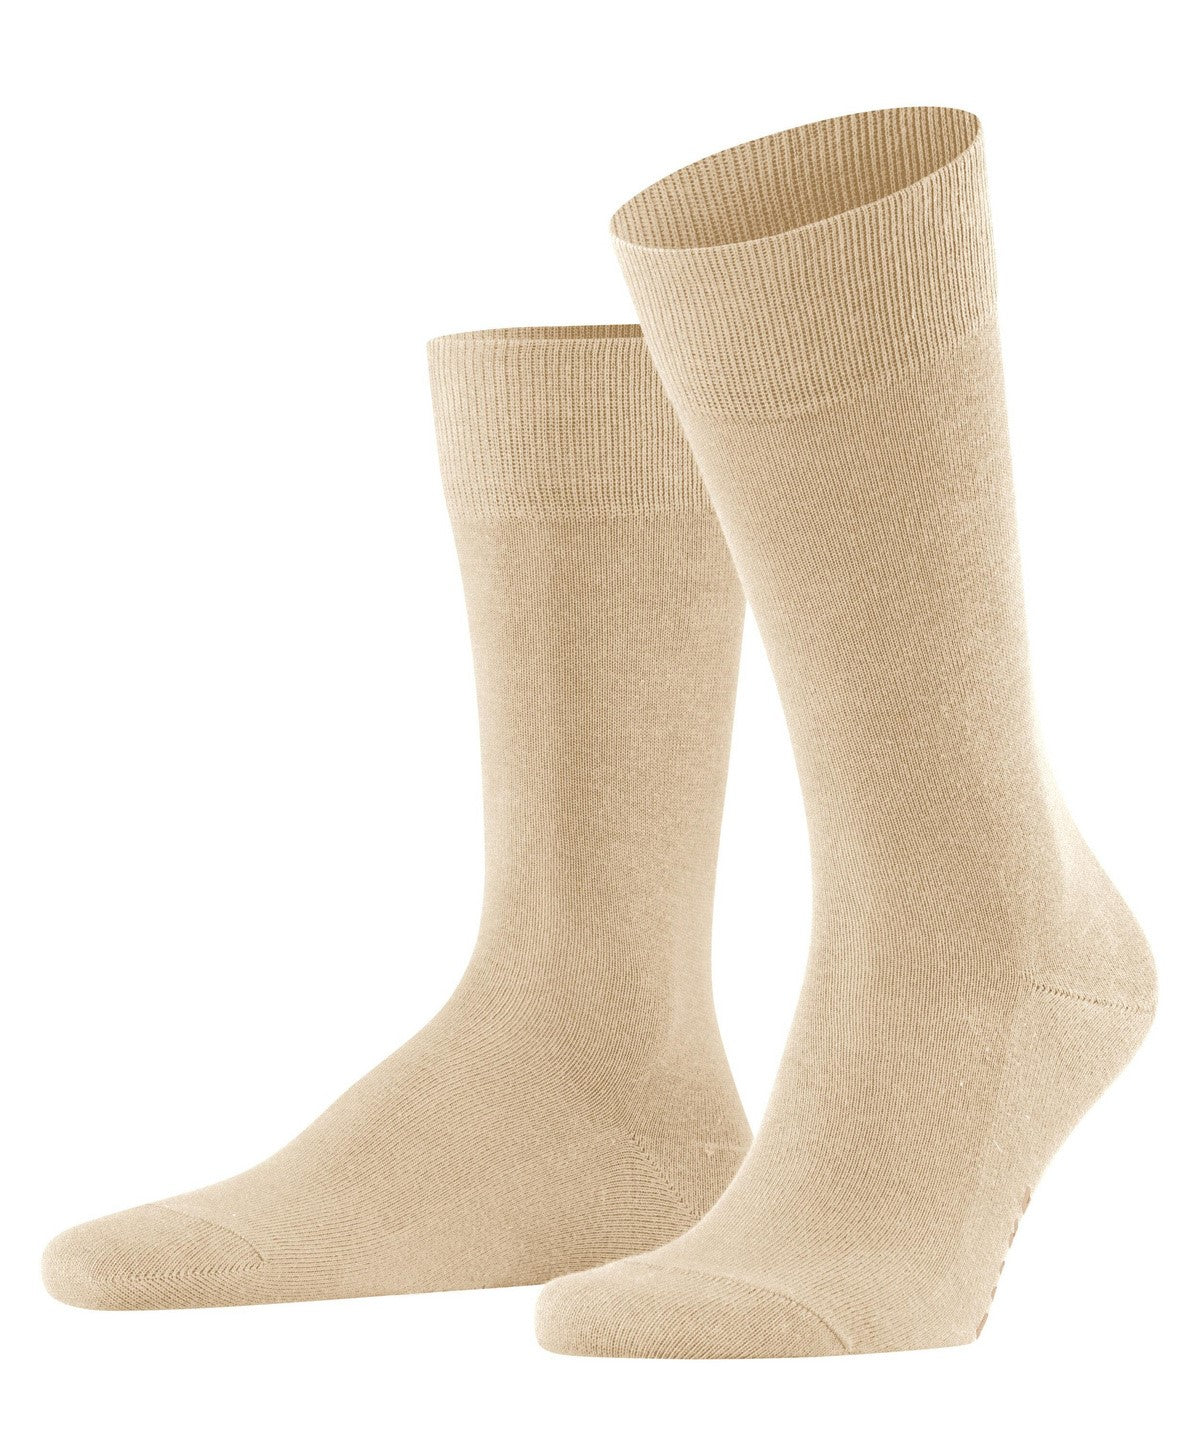 Falke Family Cotton Blend Socks Sand